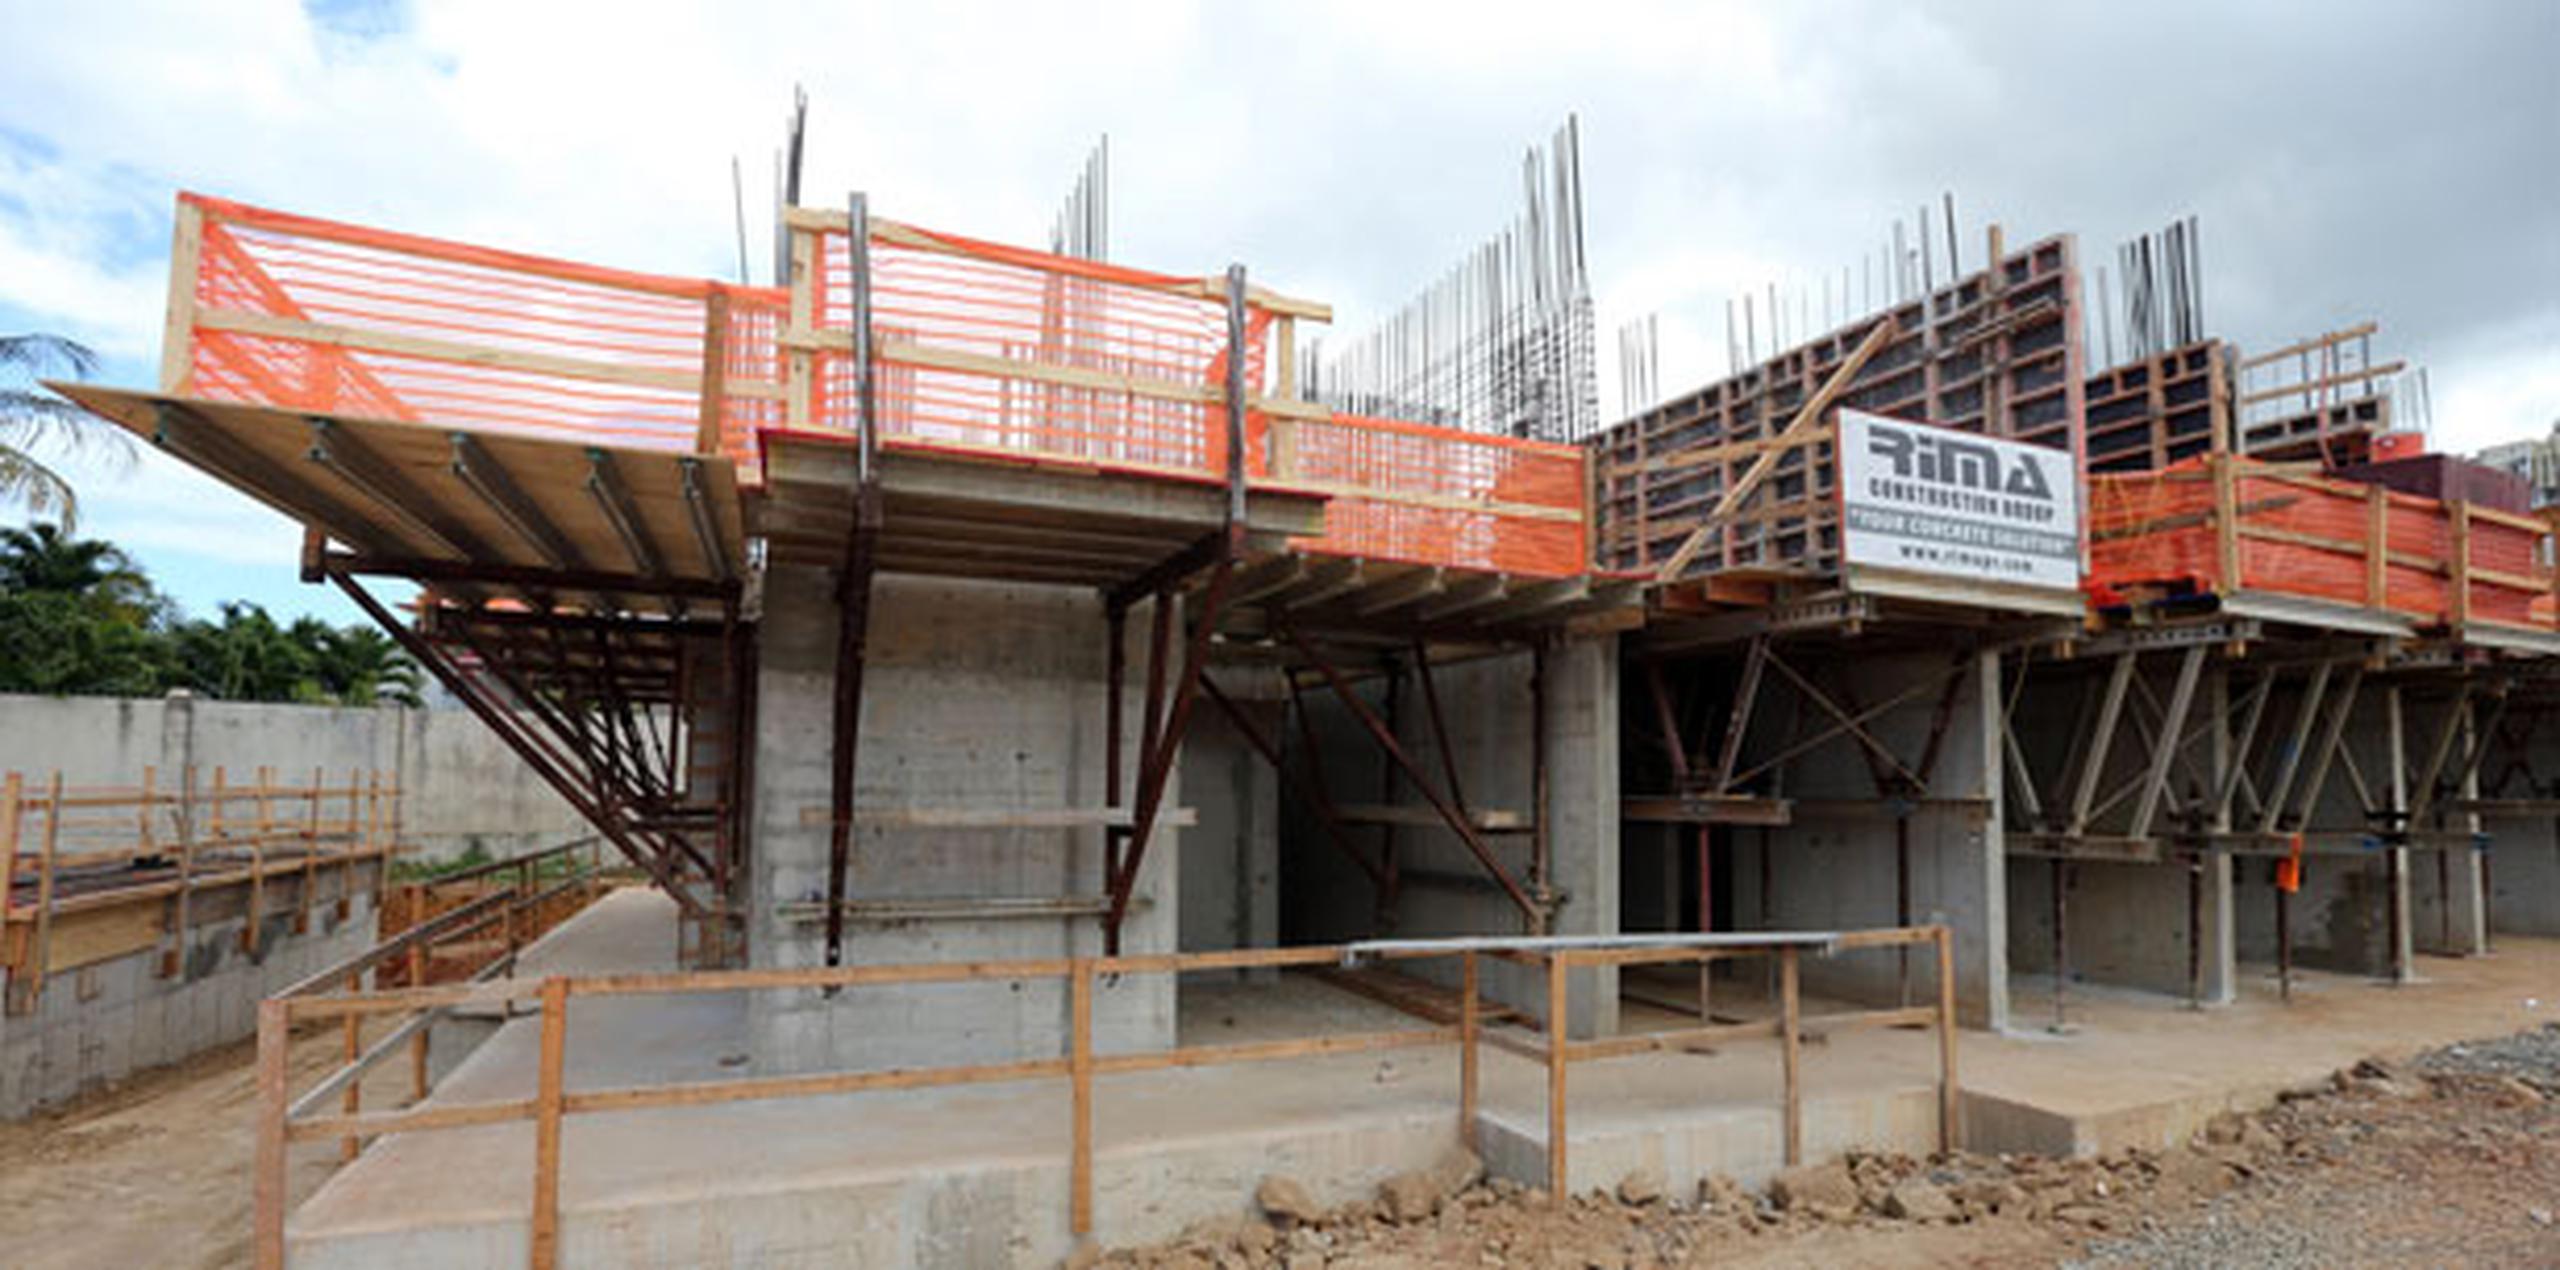 El Gobierno anunció ayer el desarrollo del proyecto de viviendas para alquiler Ciudad Lumen, ubicado al lado de la estación Martínez Nadal del Tren Urbano en Guaynabo. (juan.martinez@gfrmedia.com)